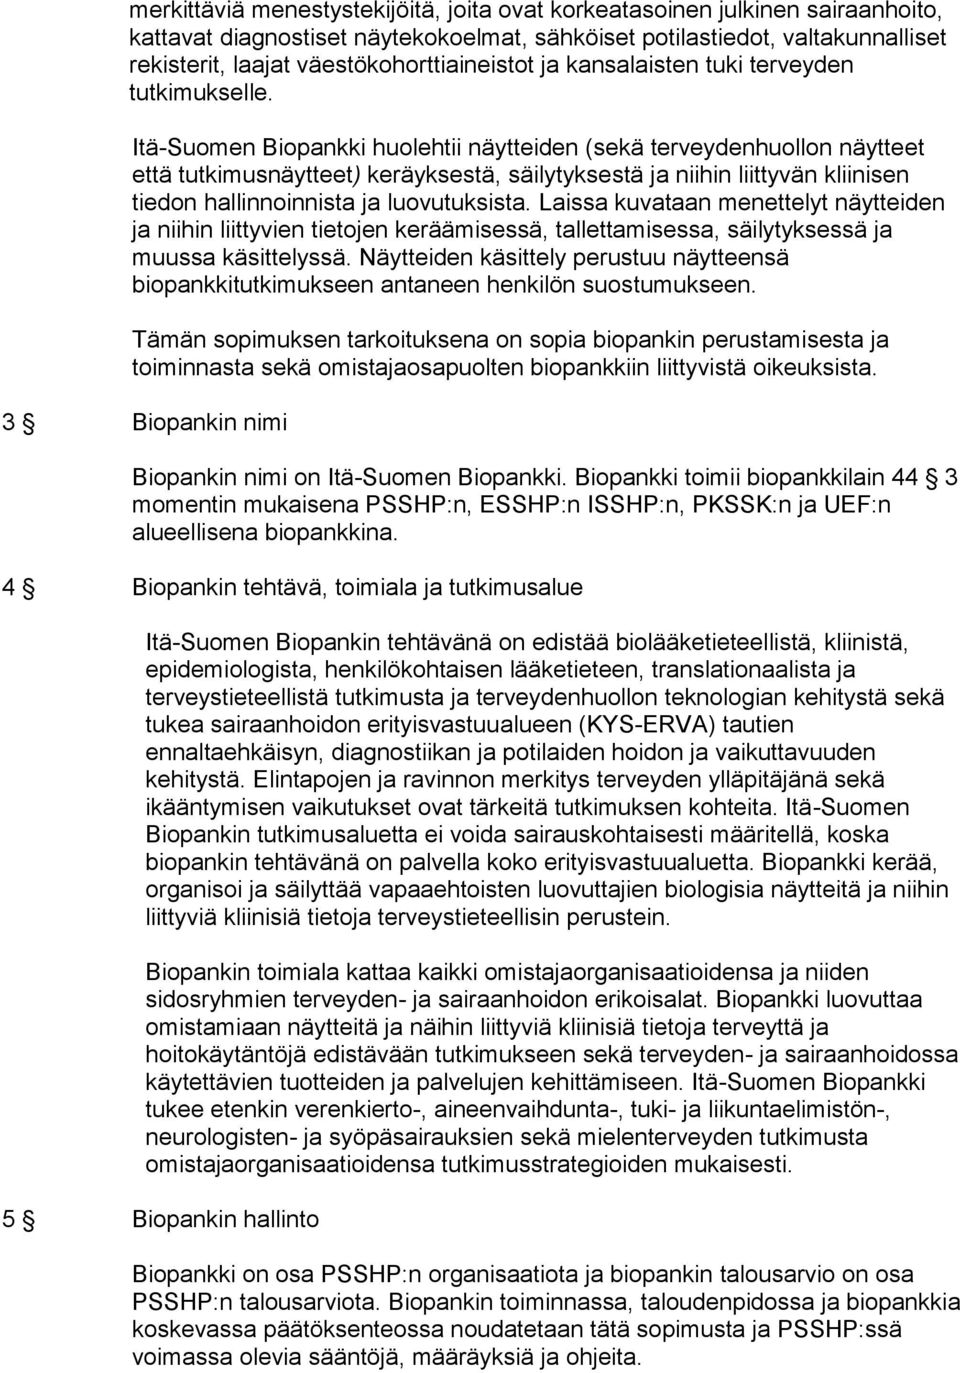 Itä-Suomen Biopankki huolehtii näytteiden (sekä terveydenhuollon näytteet että tutkimusnäytteet) keräyksestä, säilytyksestä ja niihin liittyvän kliinisen tiedon hallinnoinnista ja luovutuksista.